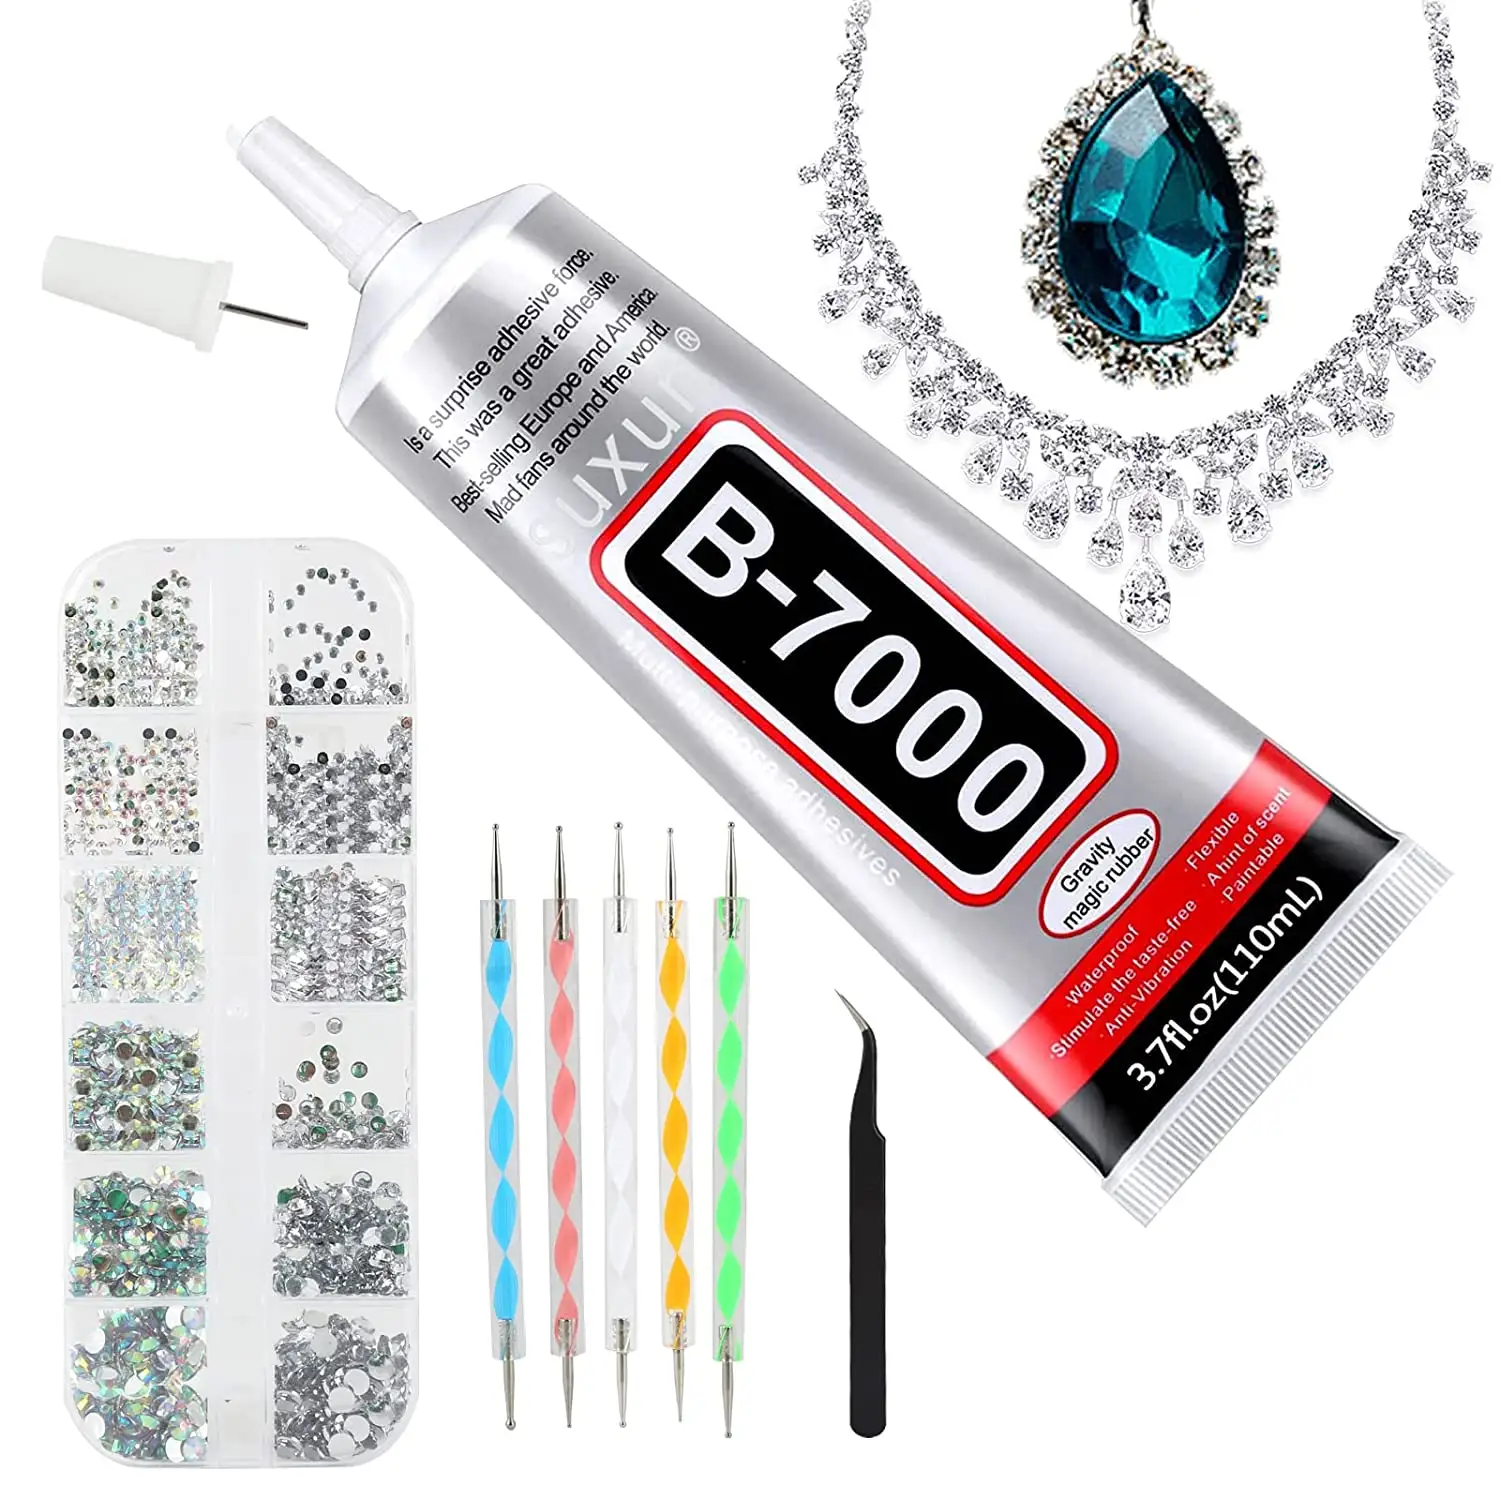 Multipurpose B7000 Medium Adhesives Transparent black Liquid Glue 110ml for DIY and mobile phone